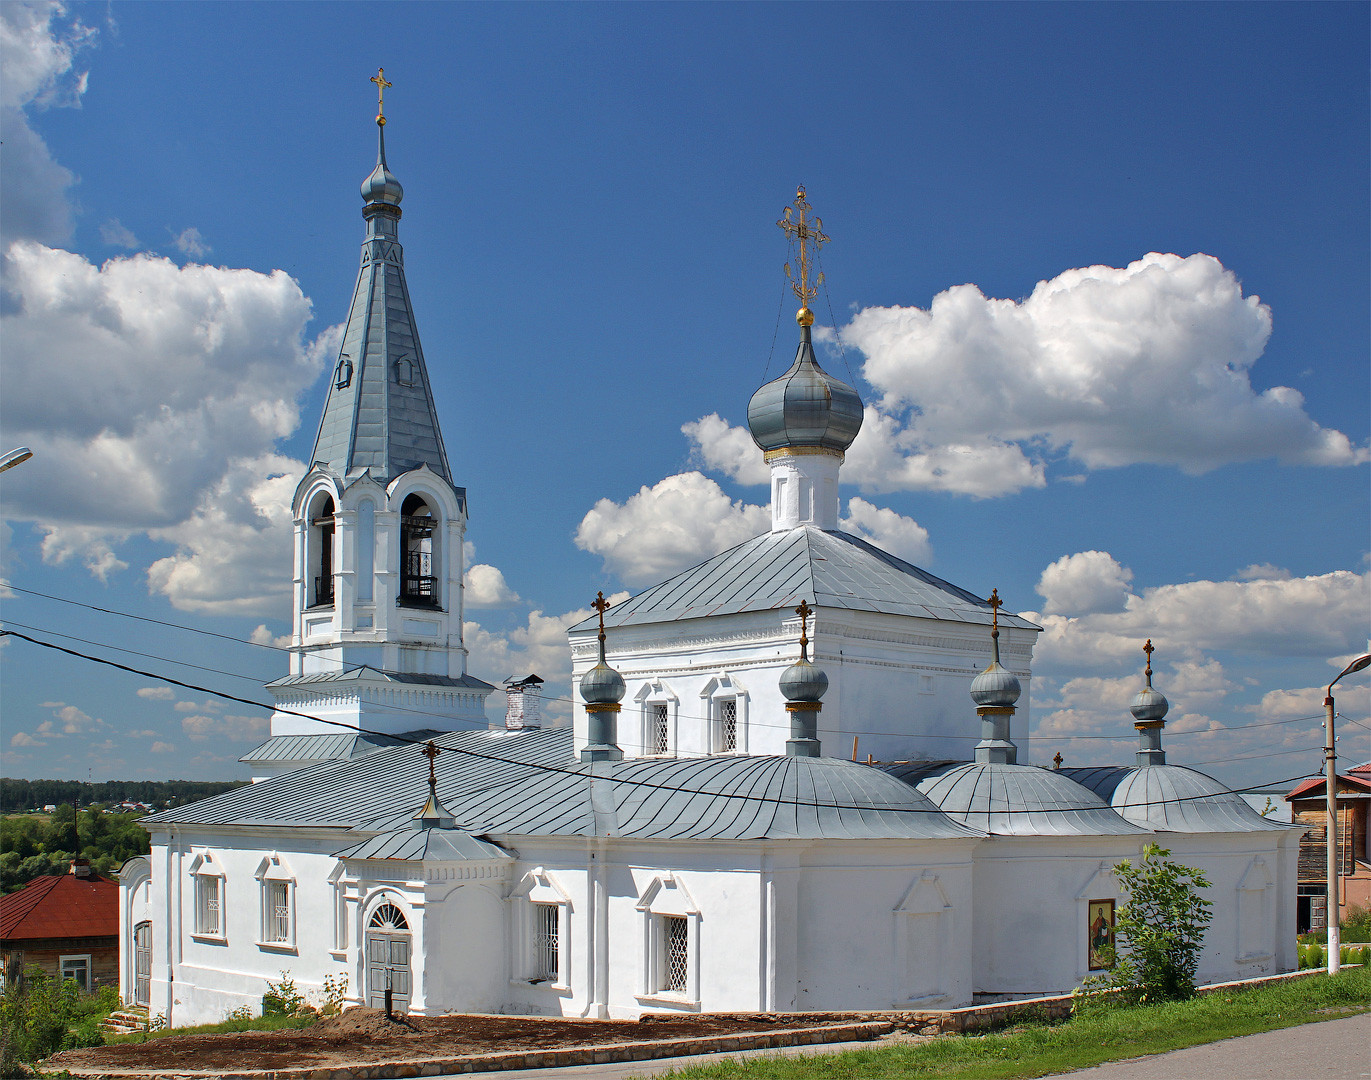 Фото: Церковь Благовещения Пресвятой Богородицы (Касимов)